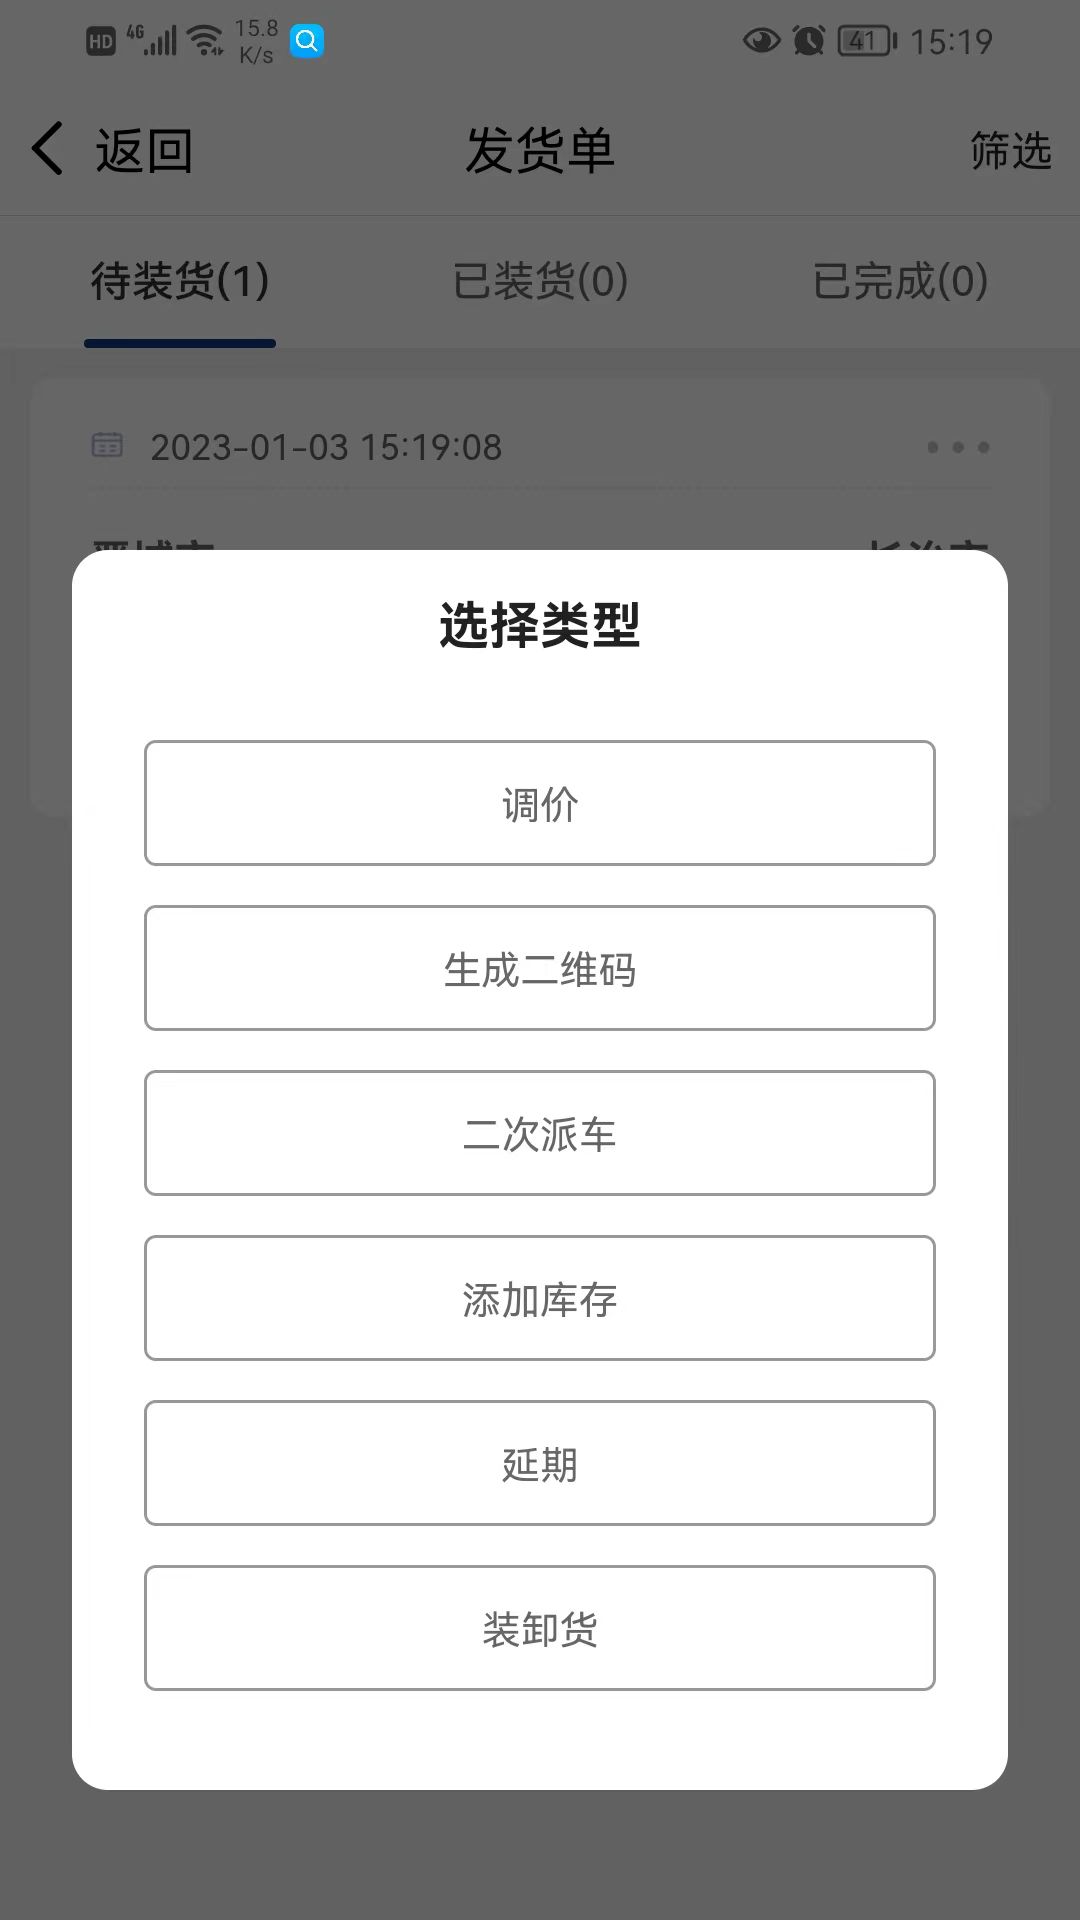 南阳煤业承运端app下载_南阳煤业承运端app软件v1.0.17 运行截图1